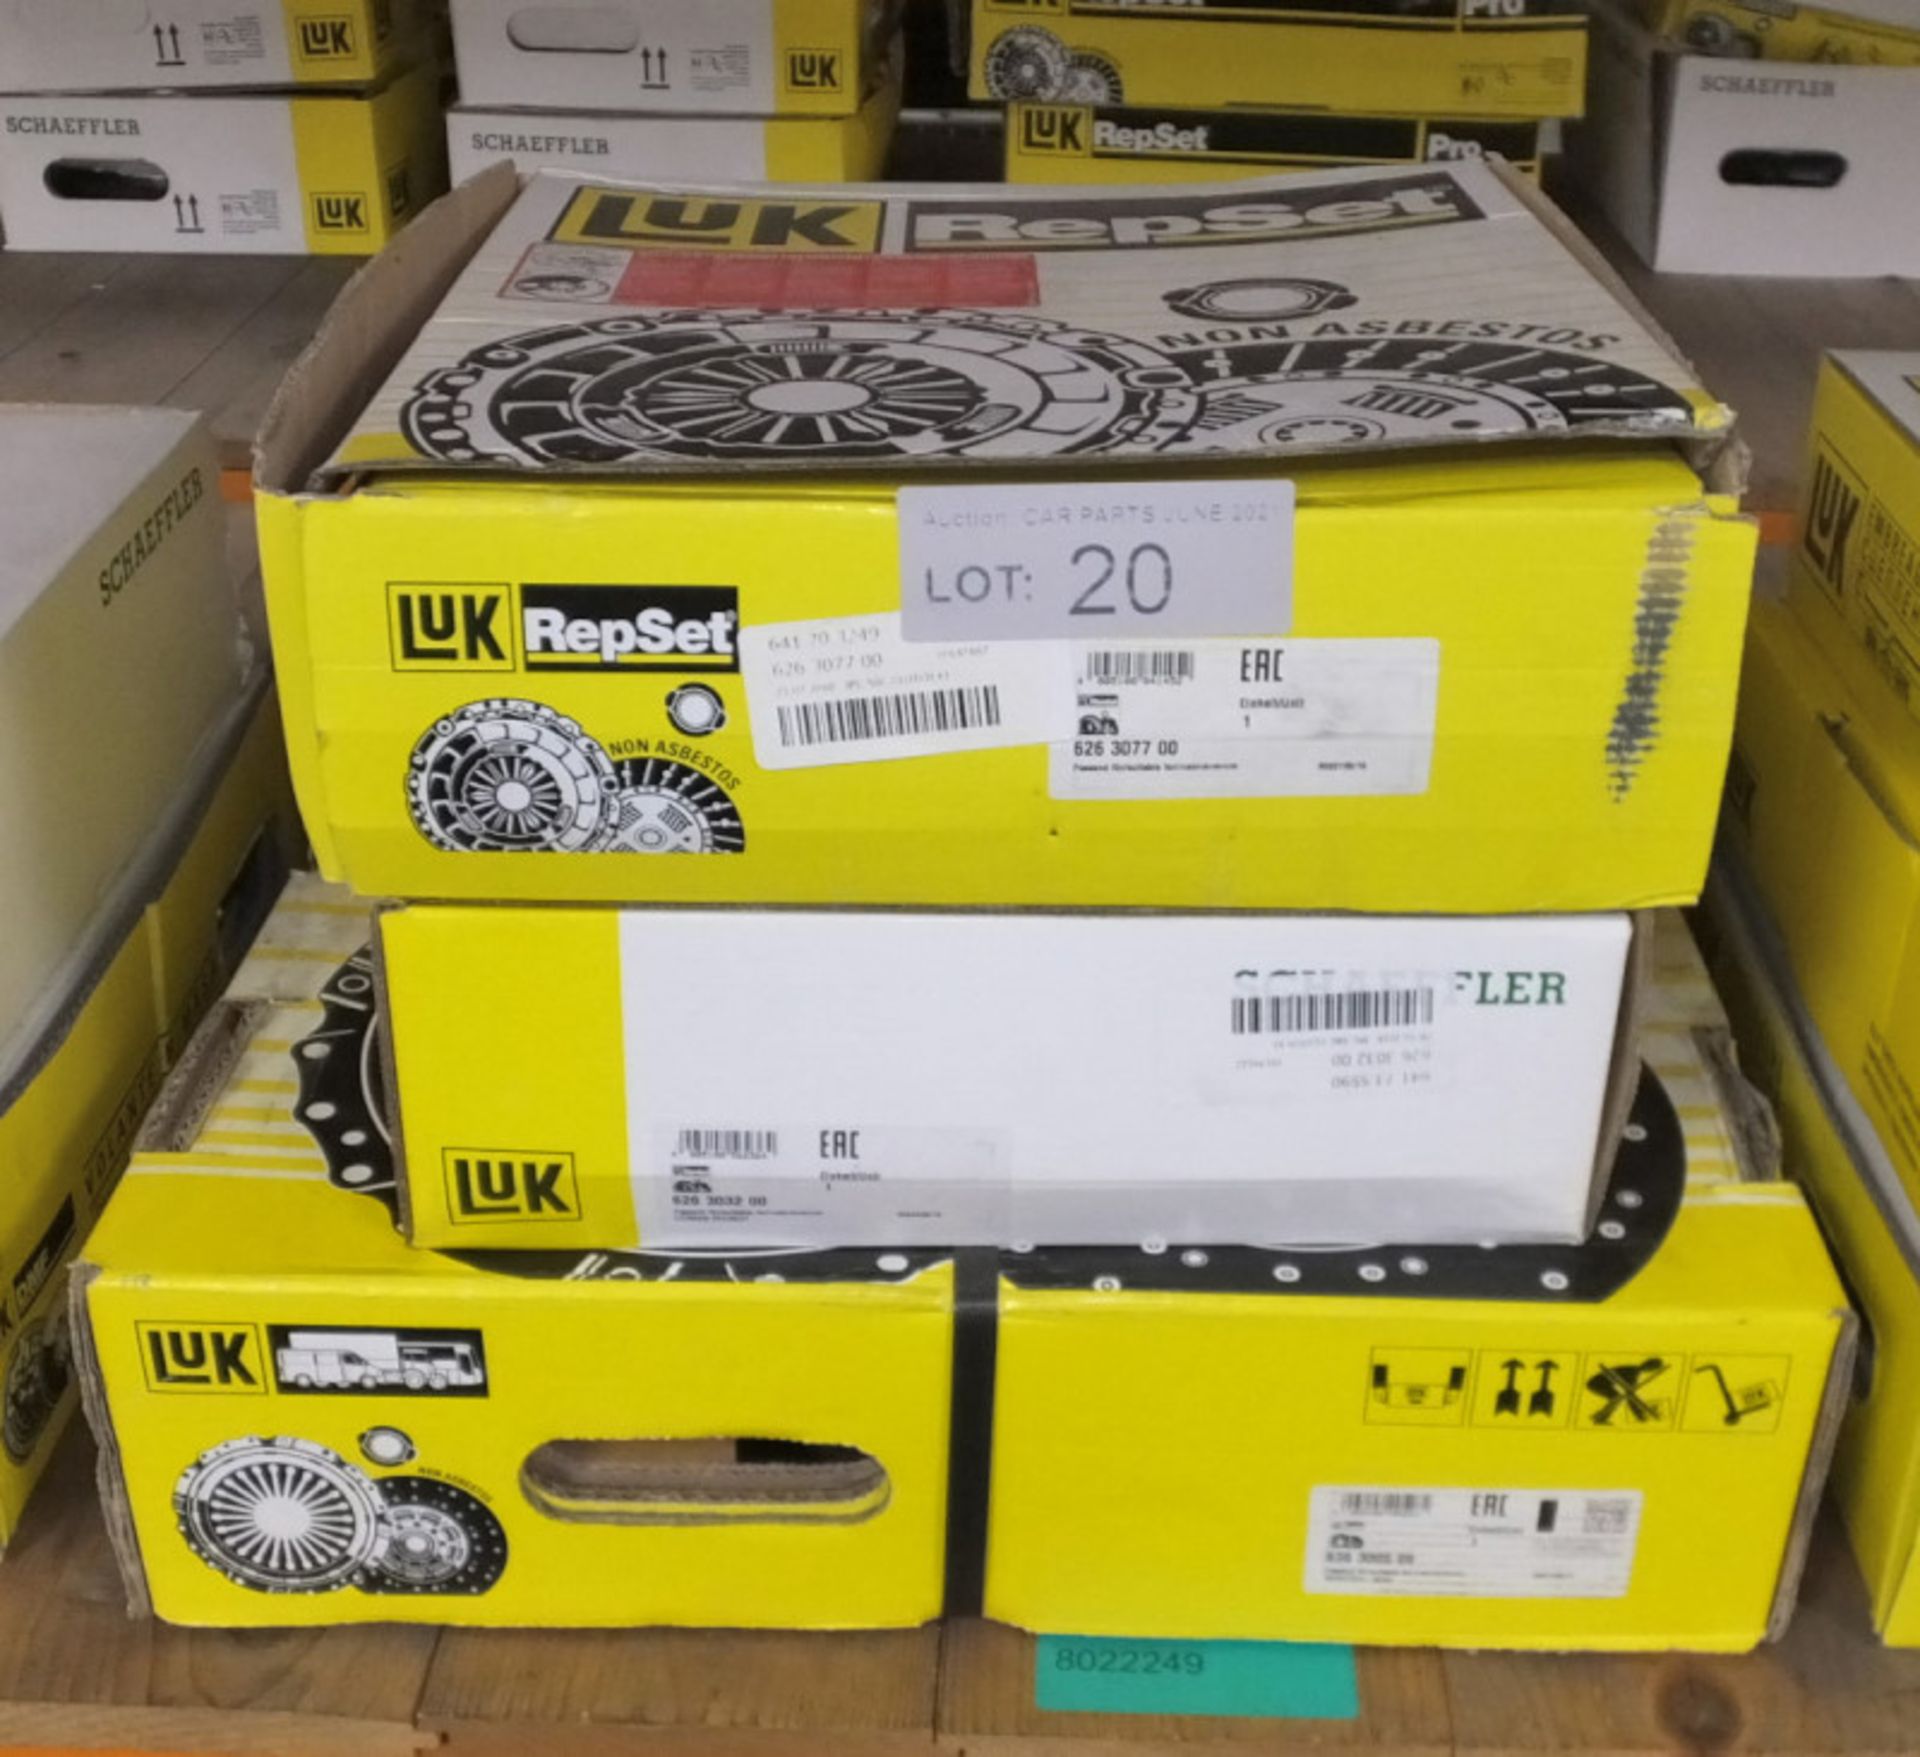 3x LUK Repset Clutch Kits (1x Schaeffler) - Models - 626 3077 00, 626 3032 00 & 636 3005 0